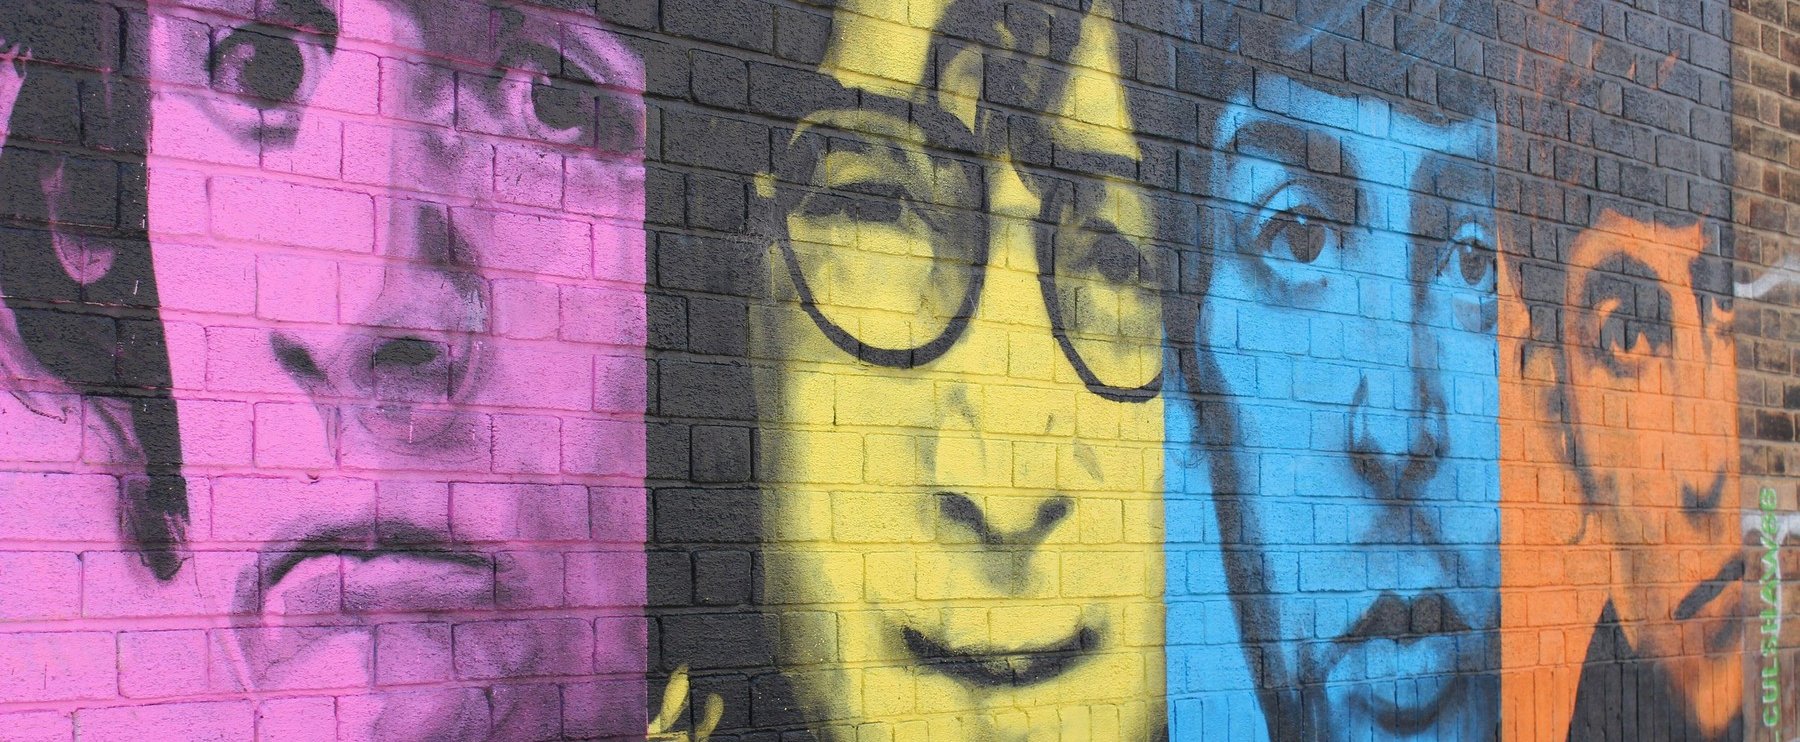 John Lennon gyilkosa elárulta, miért ölte meg az énekest, de ennek ellenére ismét is kérvényezte a szabadulását - vajon sikerül neki?